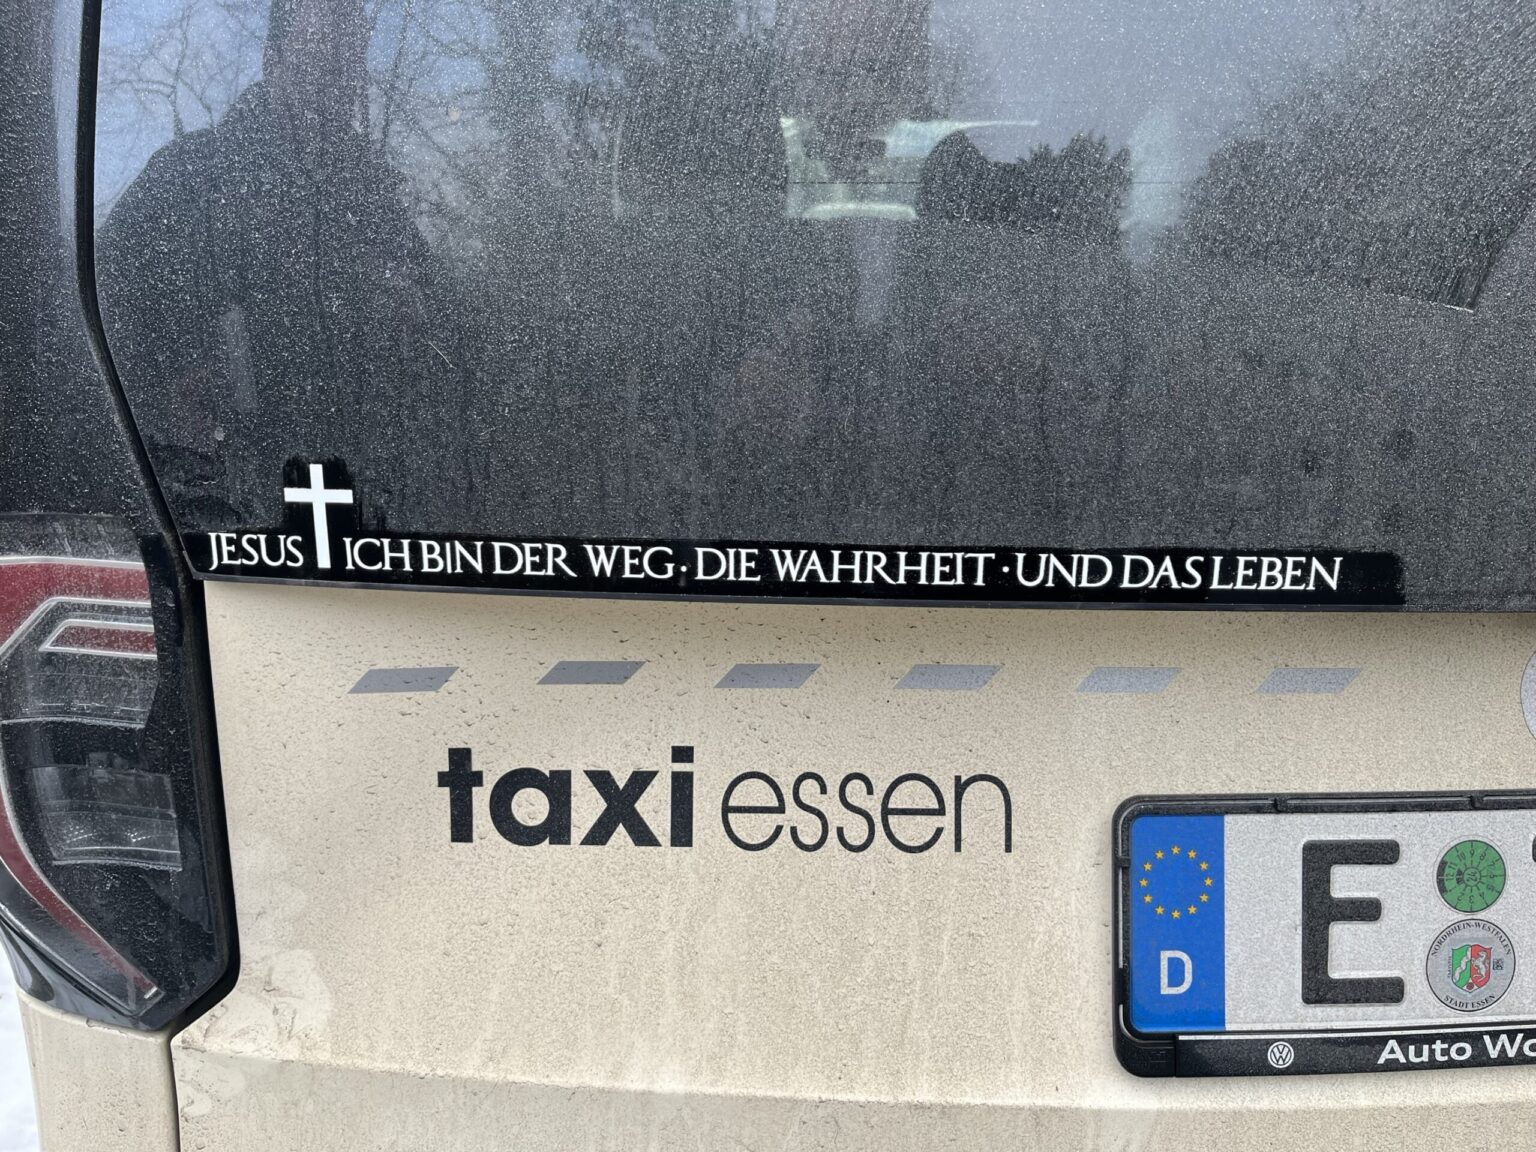 Bibliai idézet miatt bírságoltak meg egy német taxist